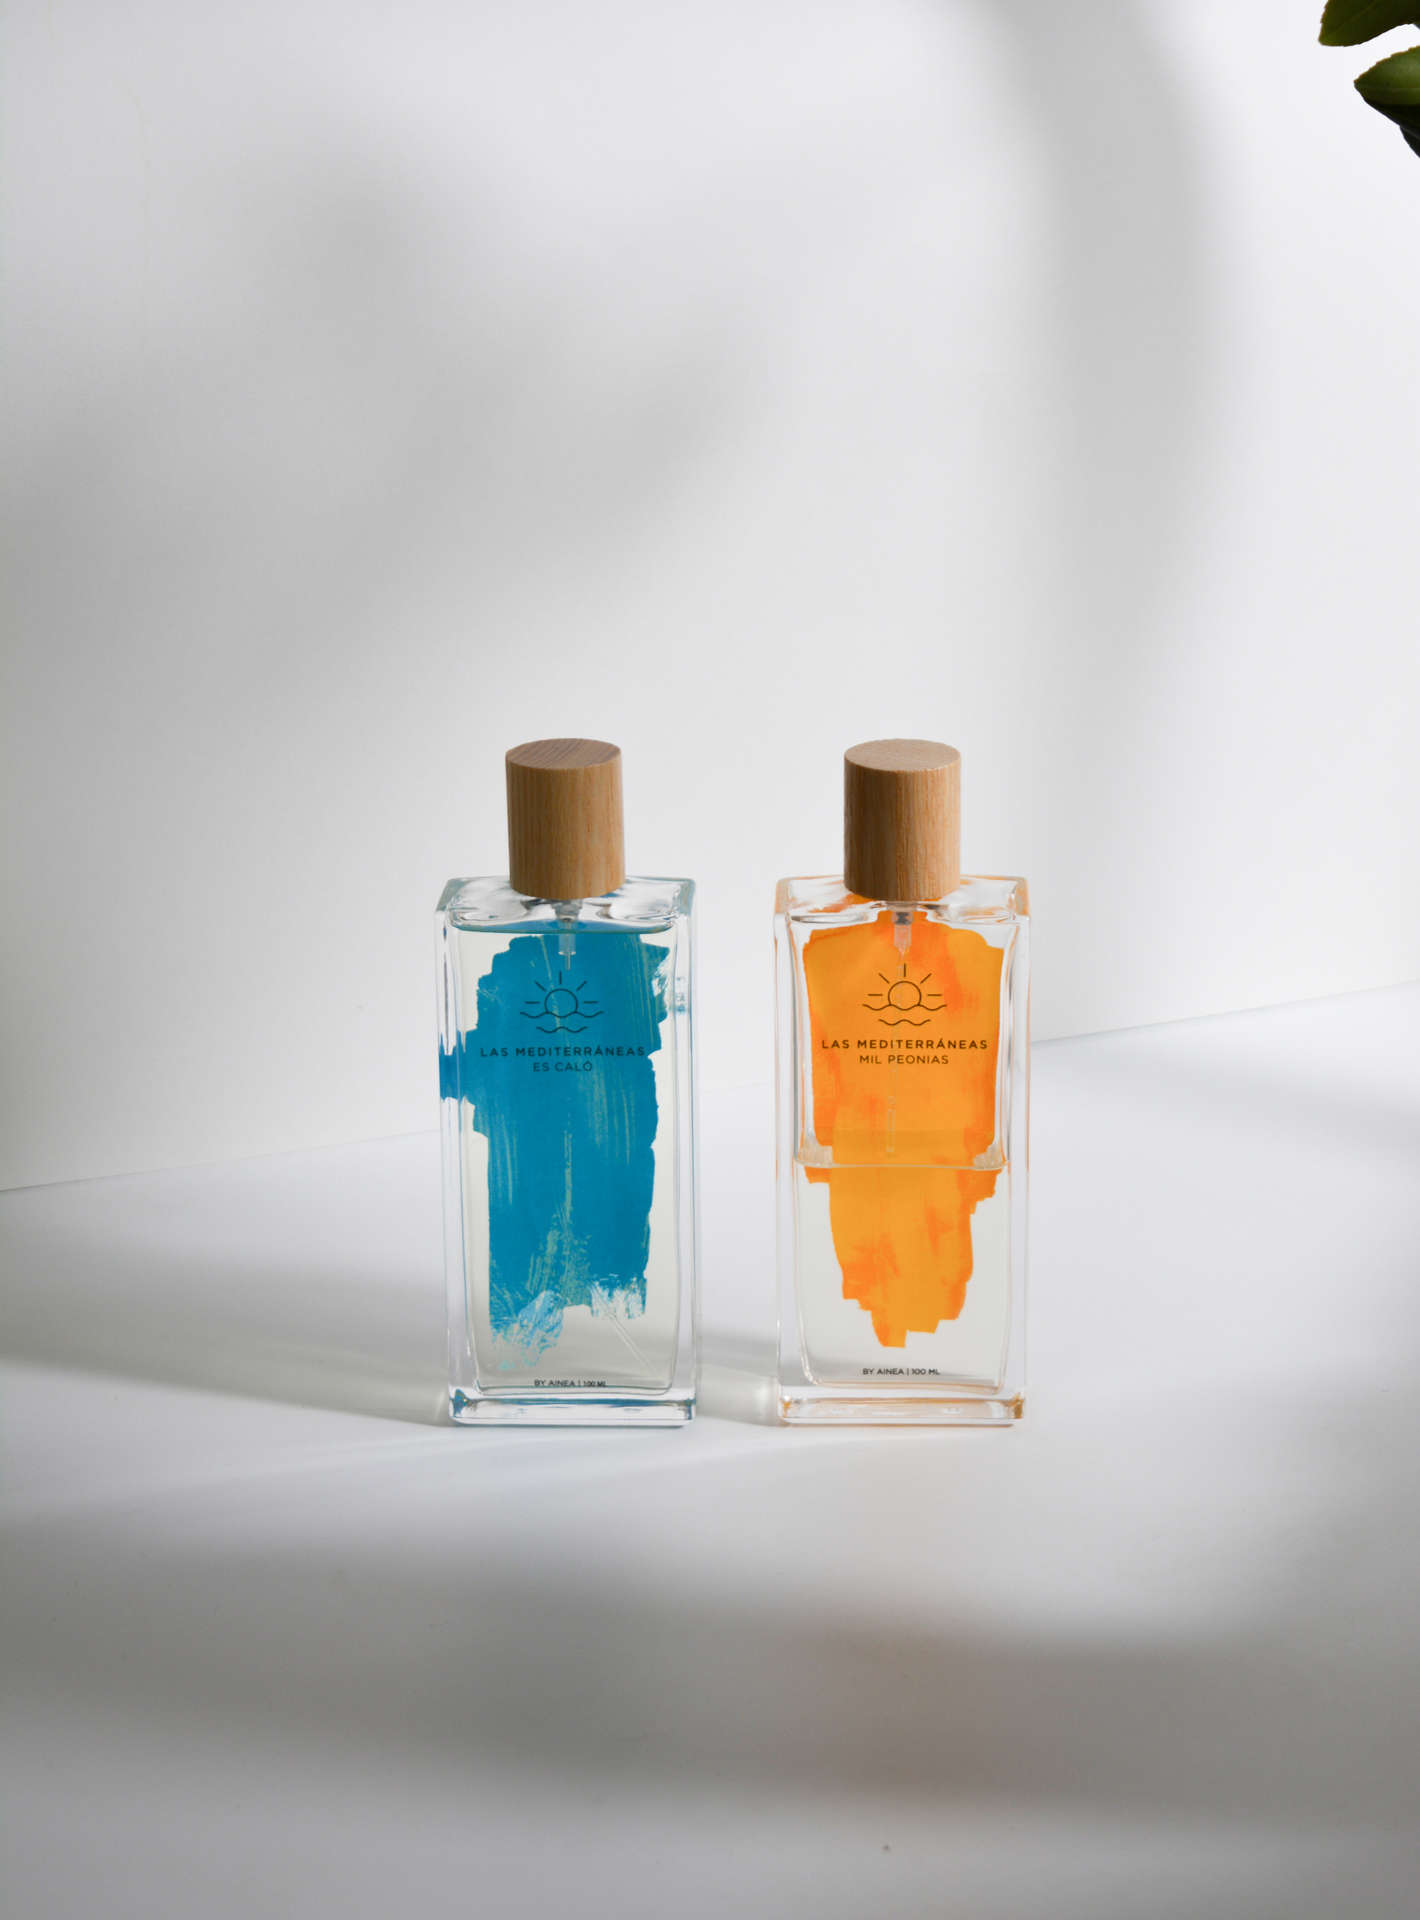 Perfumes "Es caló" y "Mil Peonias" de la colección "Las Mediterráneas" con fondo blanco y sombras.